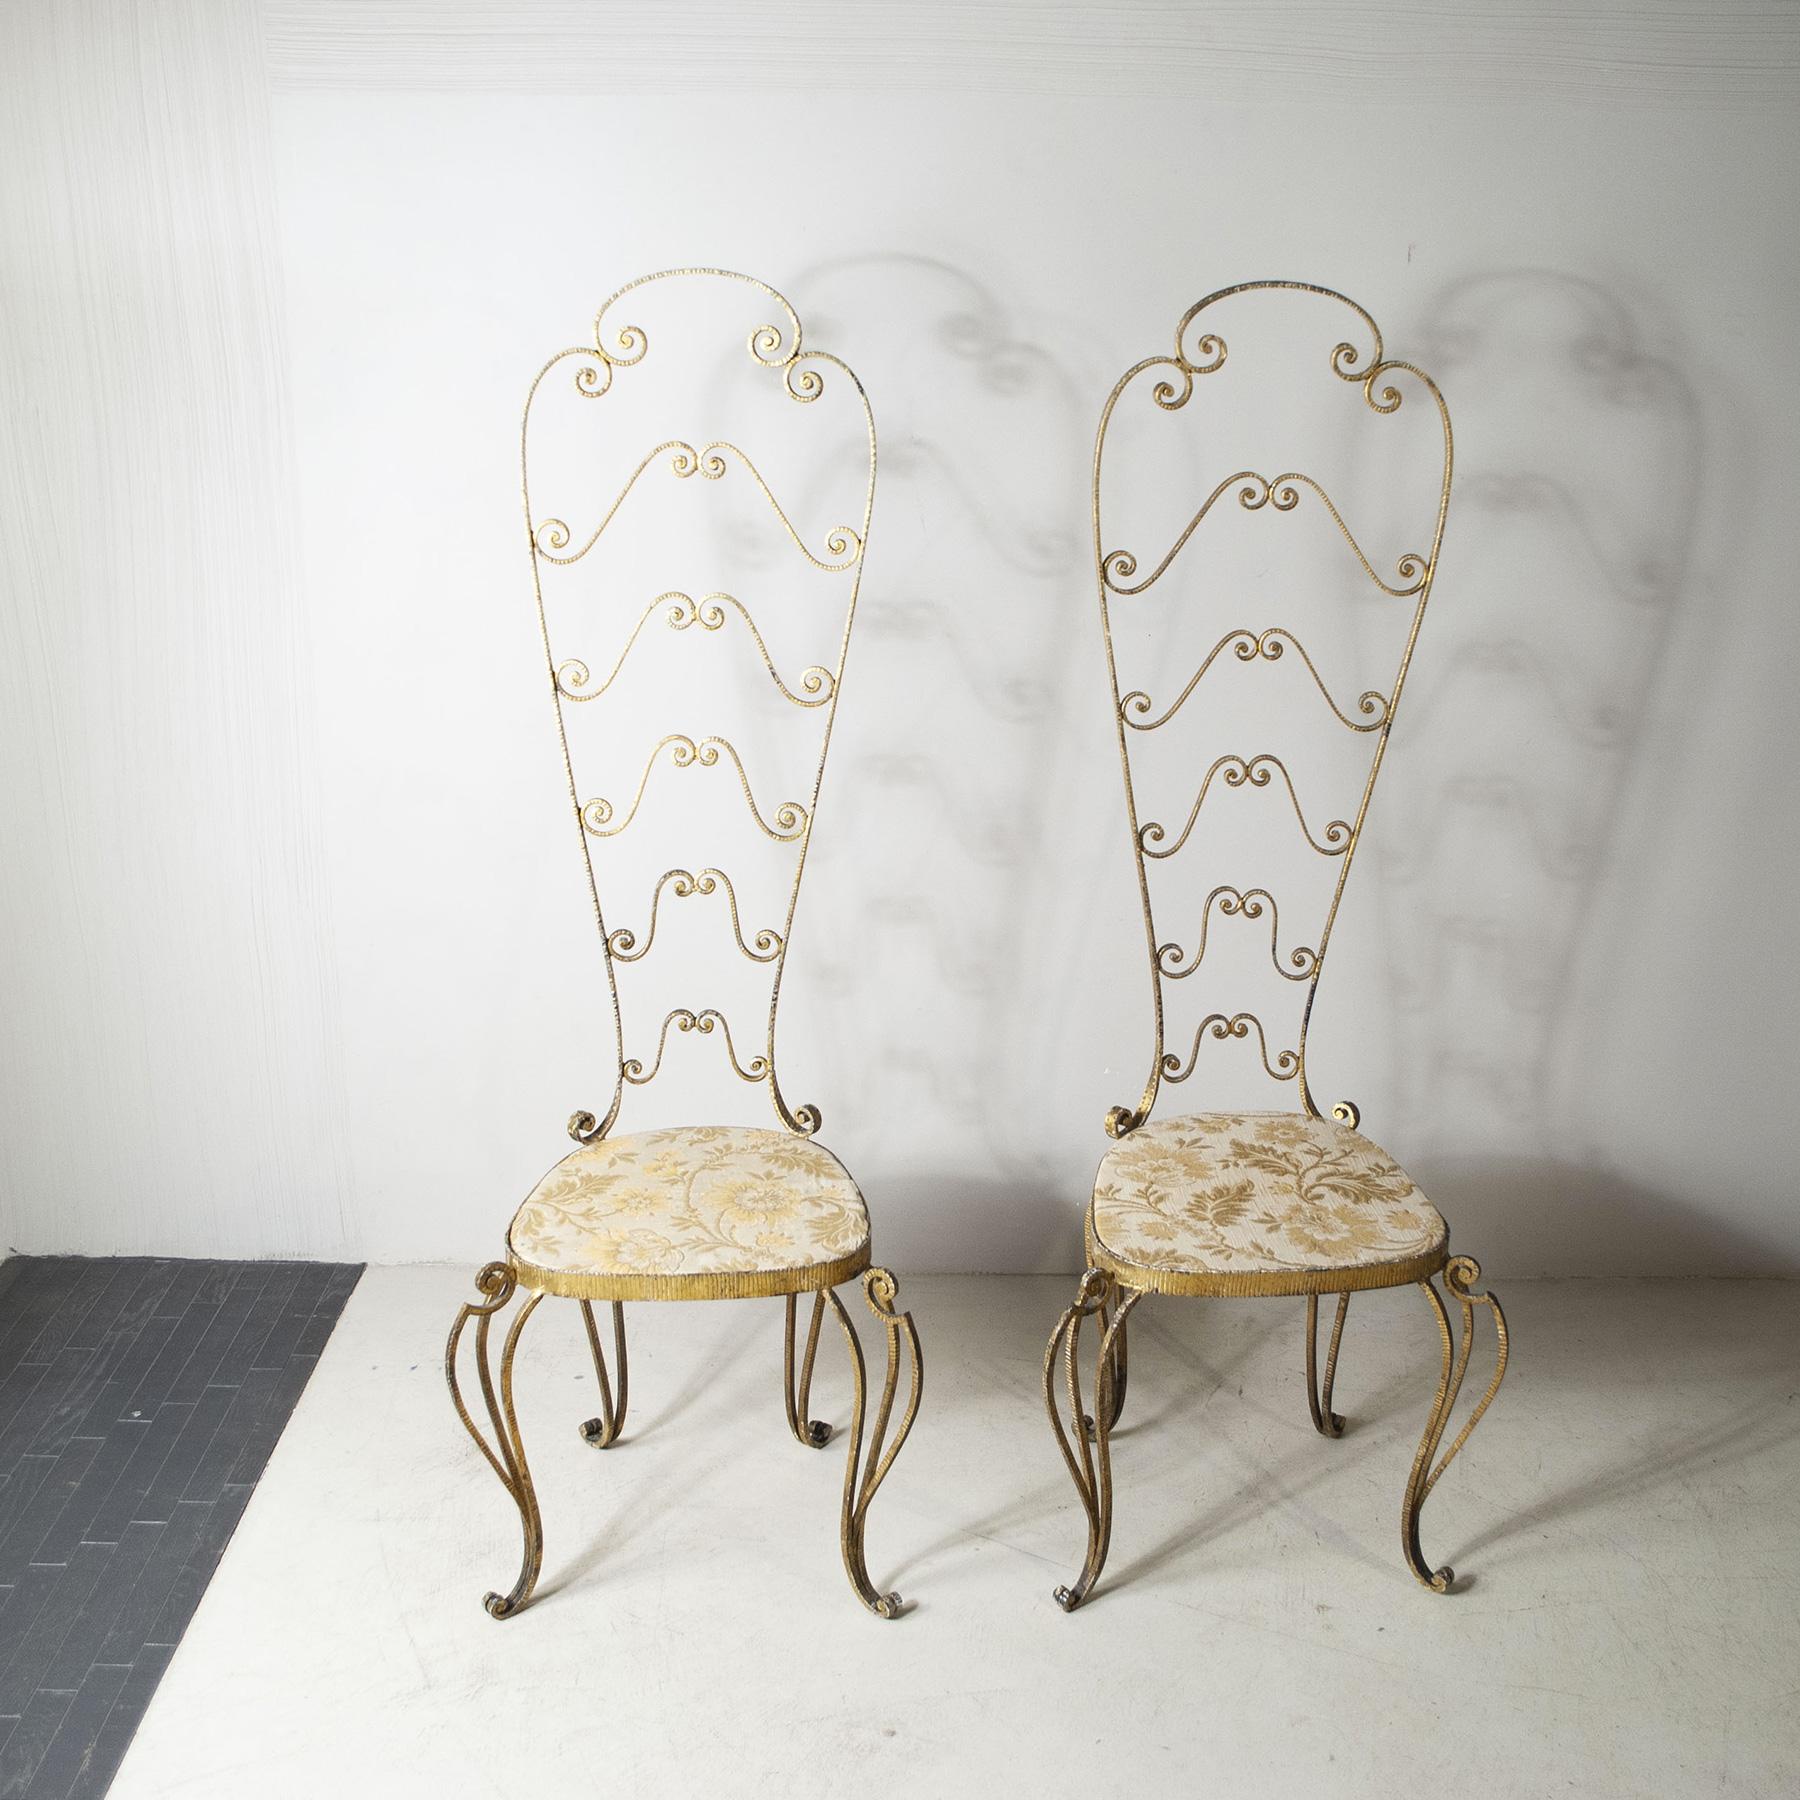 Satz von zwei Stühlen aus gehämmertem, vergoldetem Eisen aus dem berühmten Turiner Haus Pierluigi Colli, Produktionszeit 1960er Jahre

